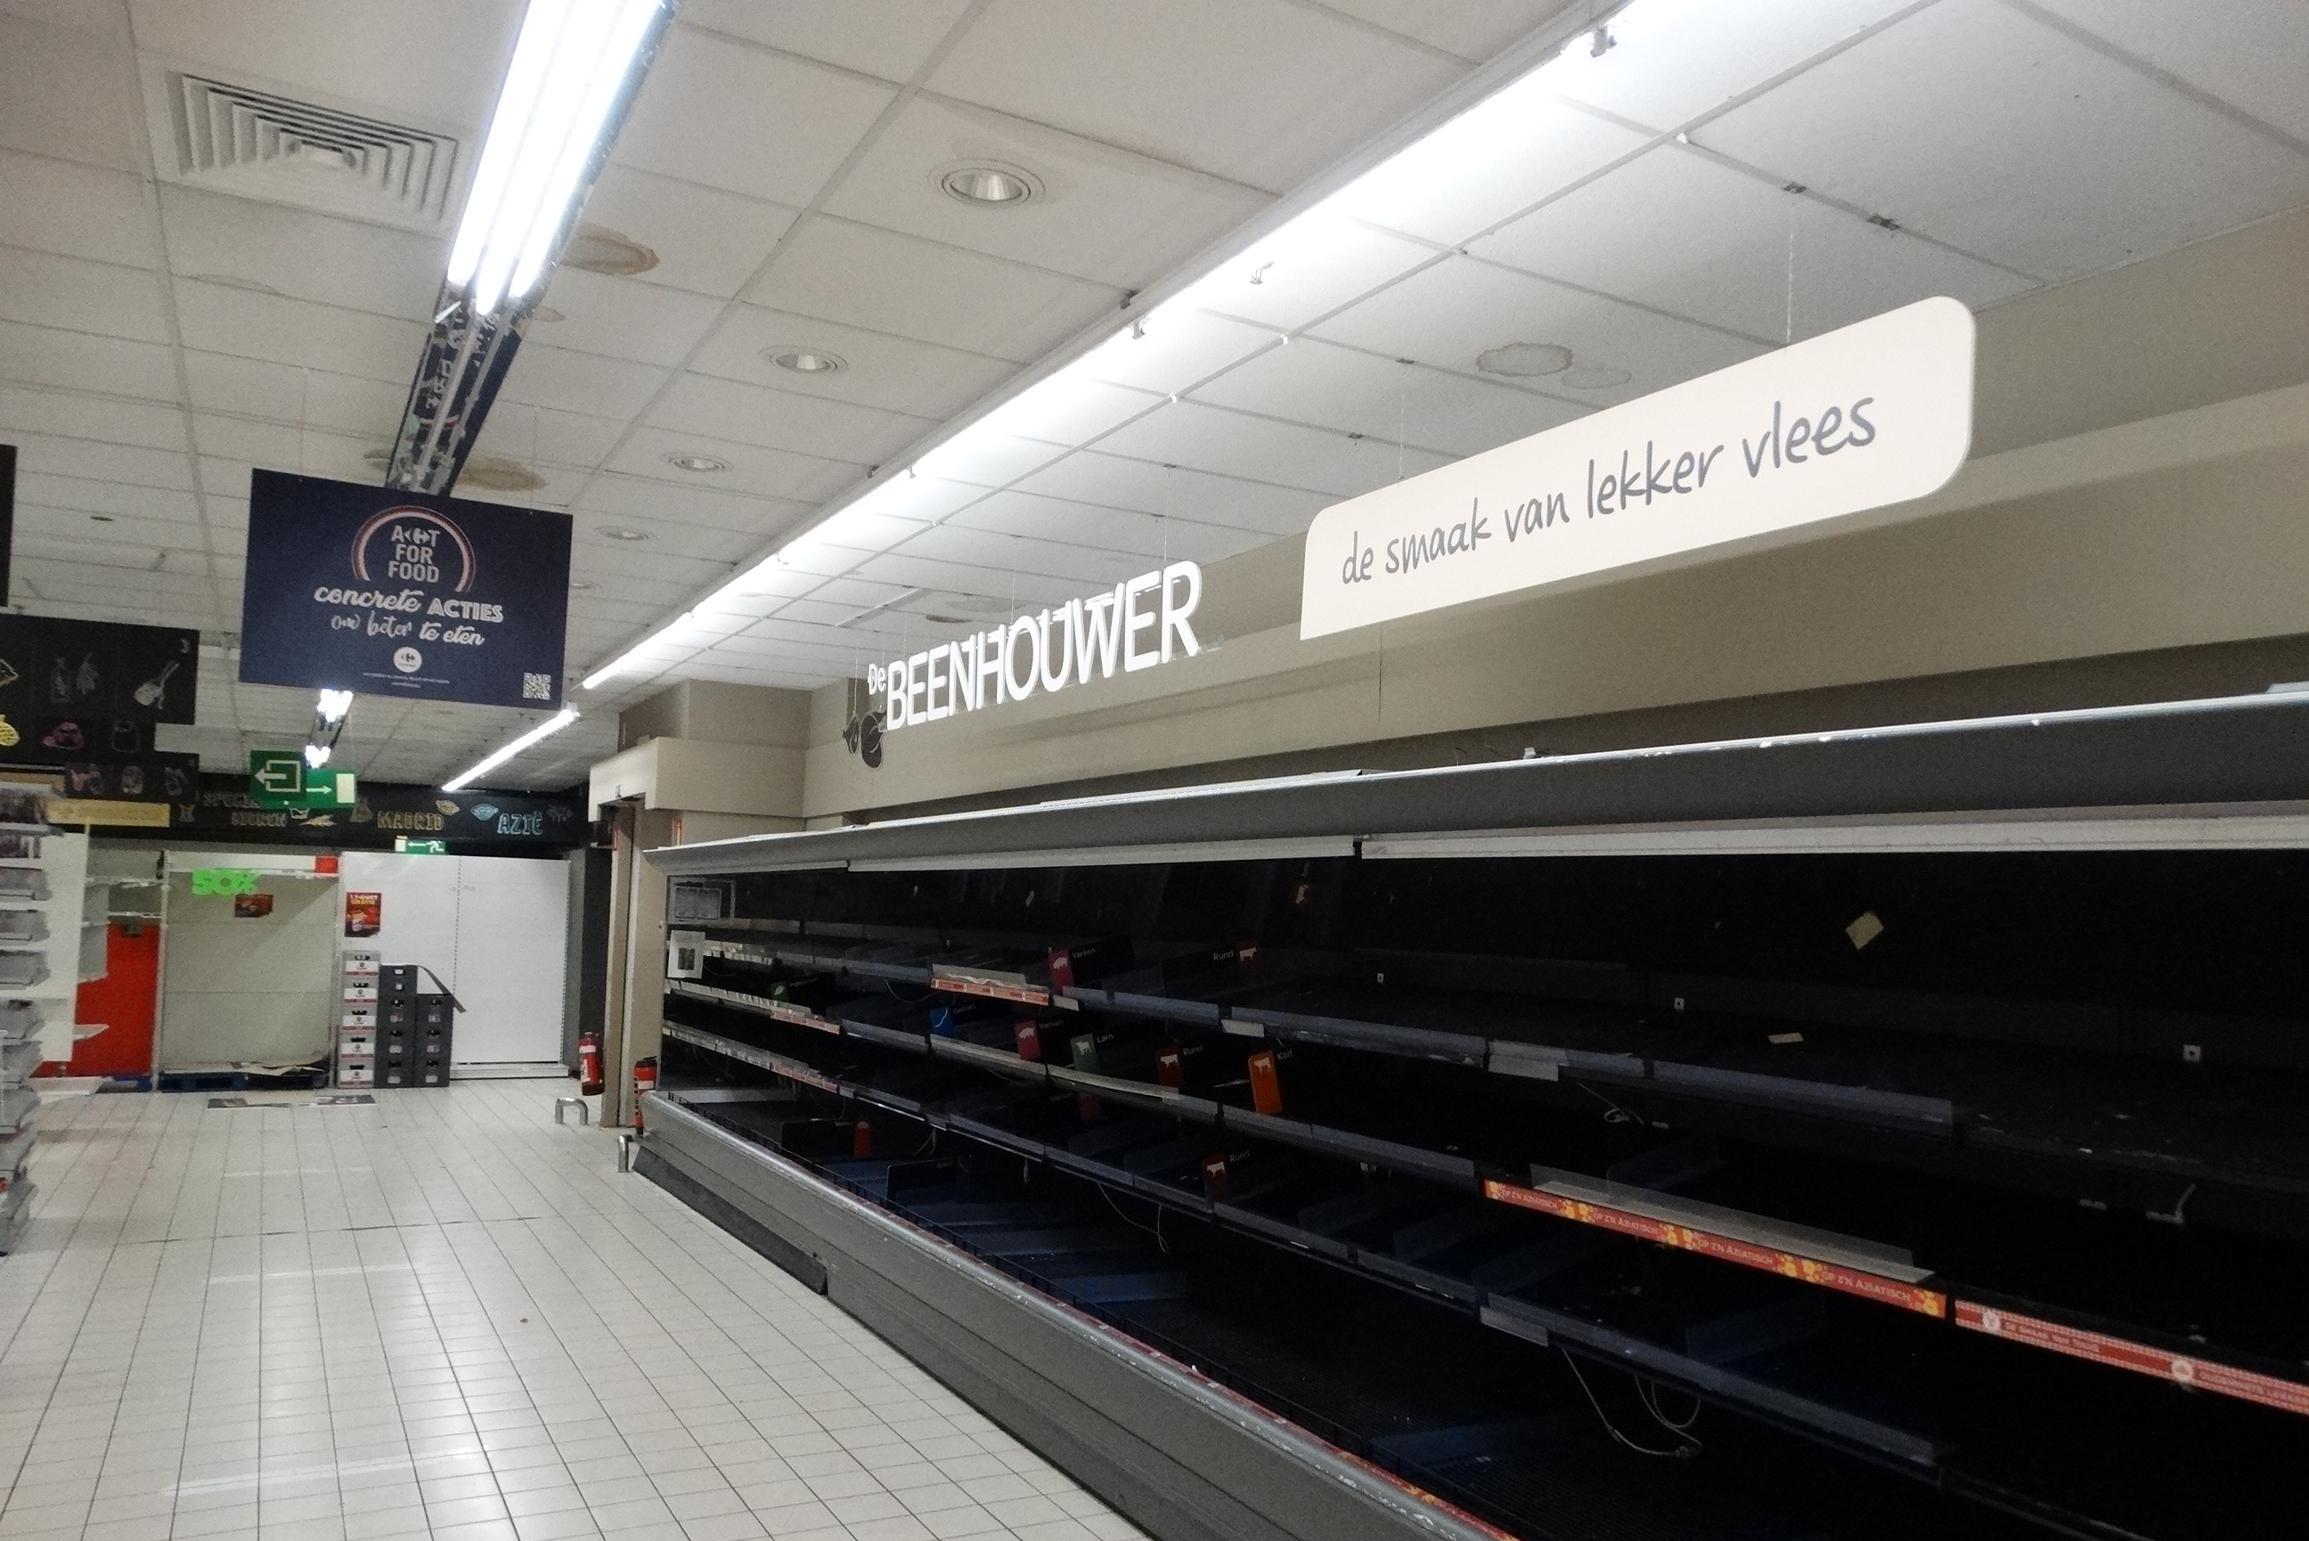 Supermarkt op Heymanplein sluit volgende week definitief de deuren, maar winkel is nu al zo goed als leeg: “Het zal wennen worden”